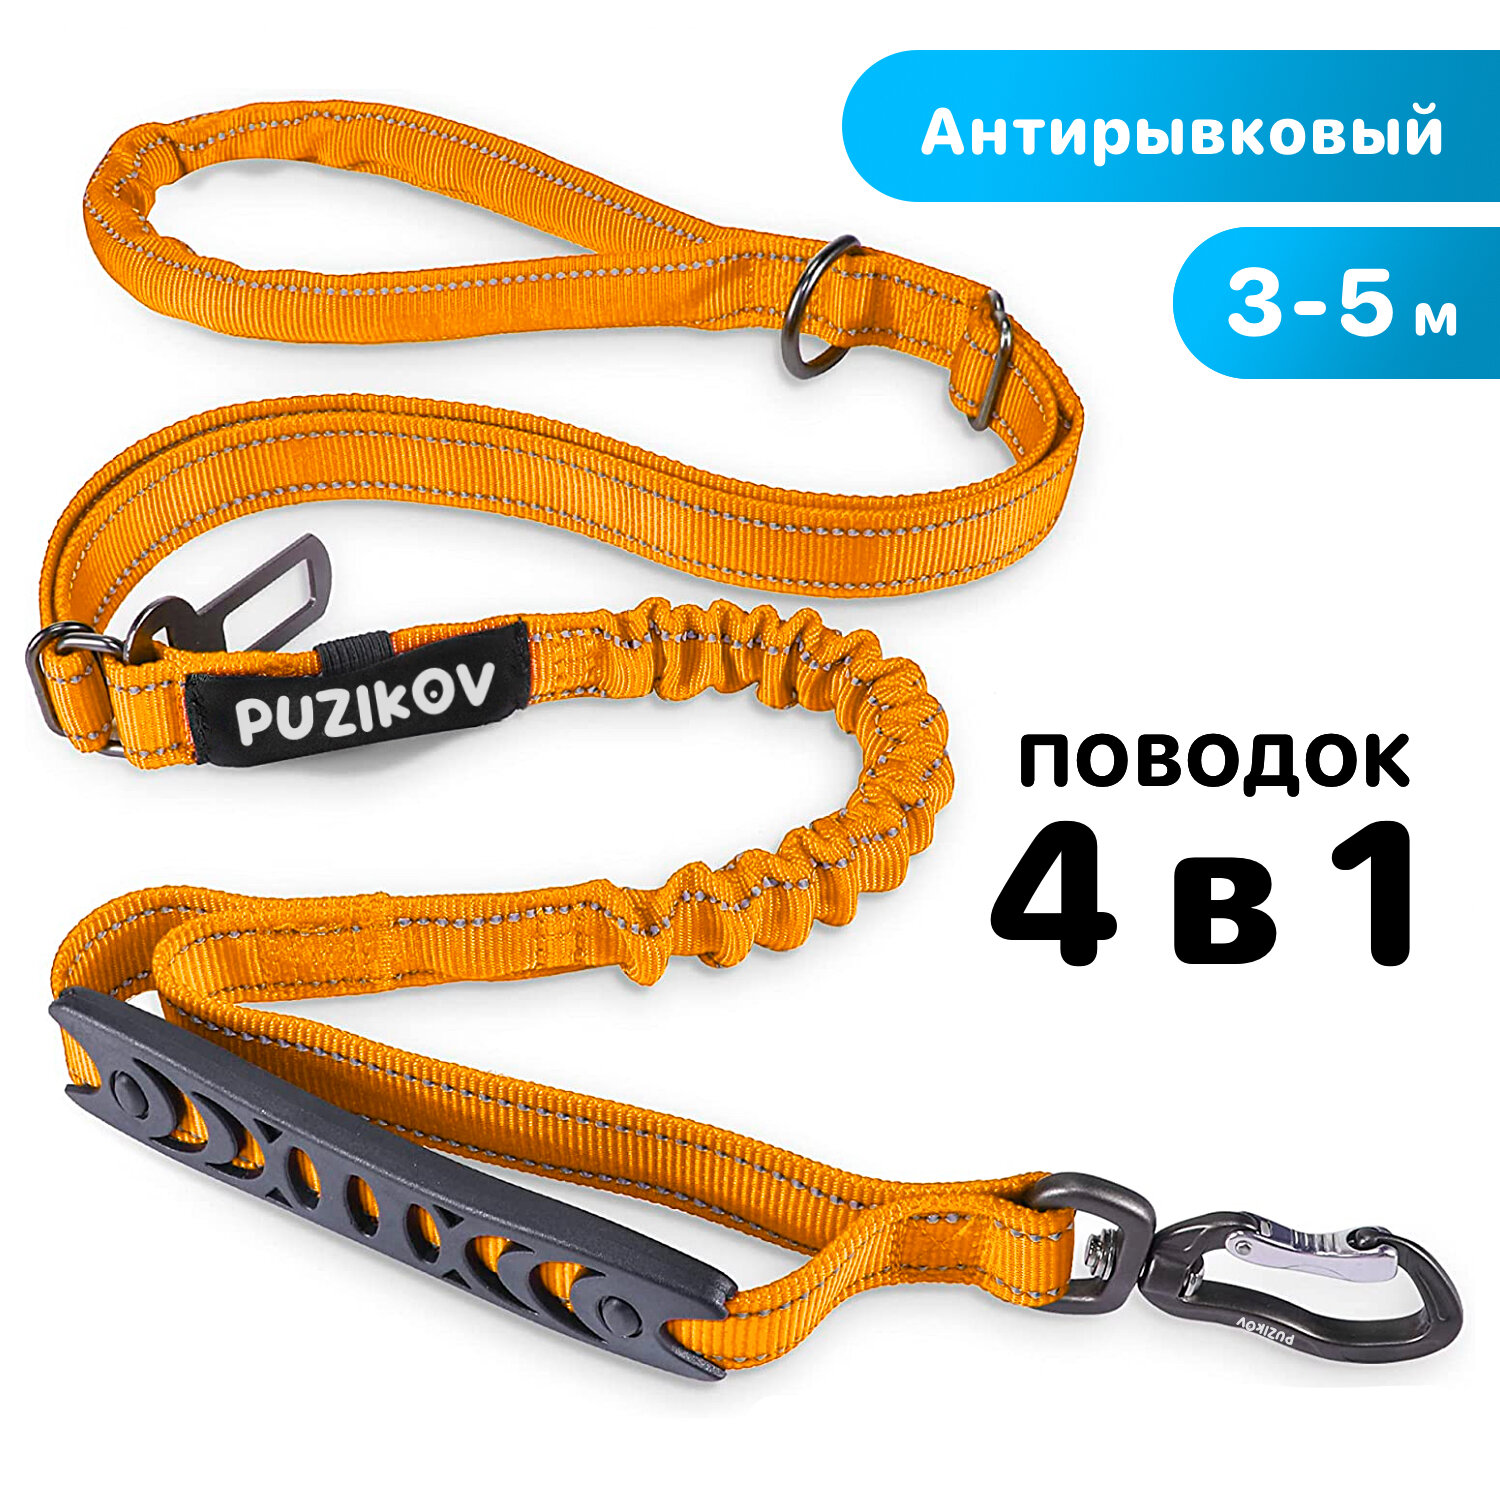 Поводок для собак Антирывковый с усиленным карабином 4 в 1 для средних и крупных пород, 3-5 метров, оранжевый, PUZIKOV / пузиков